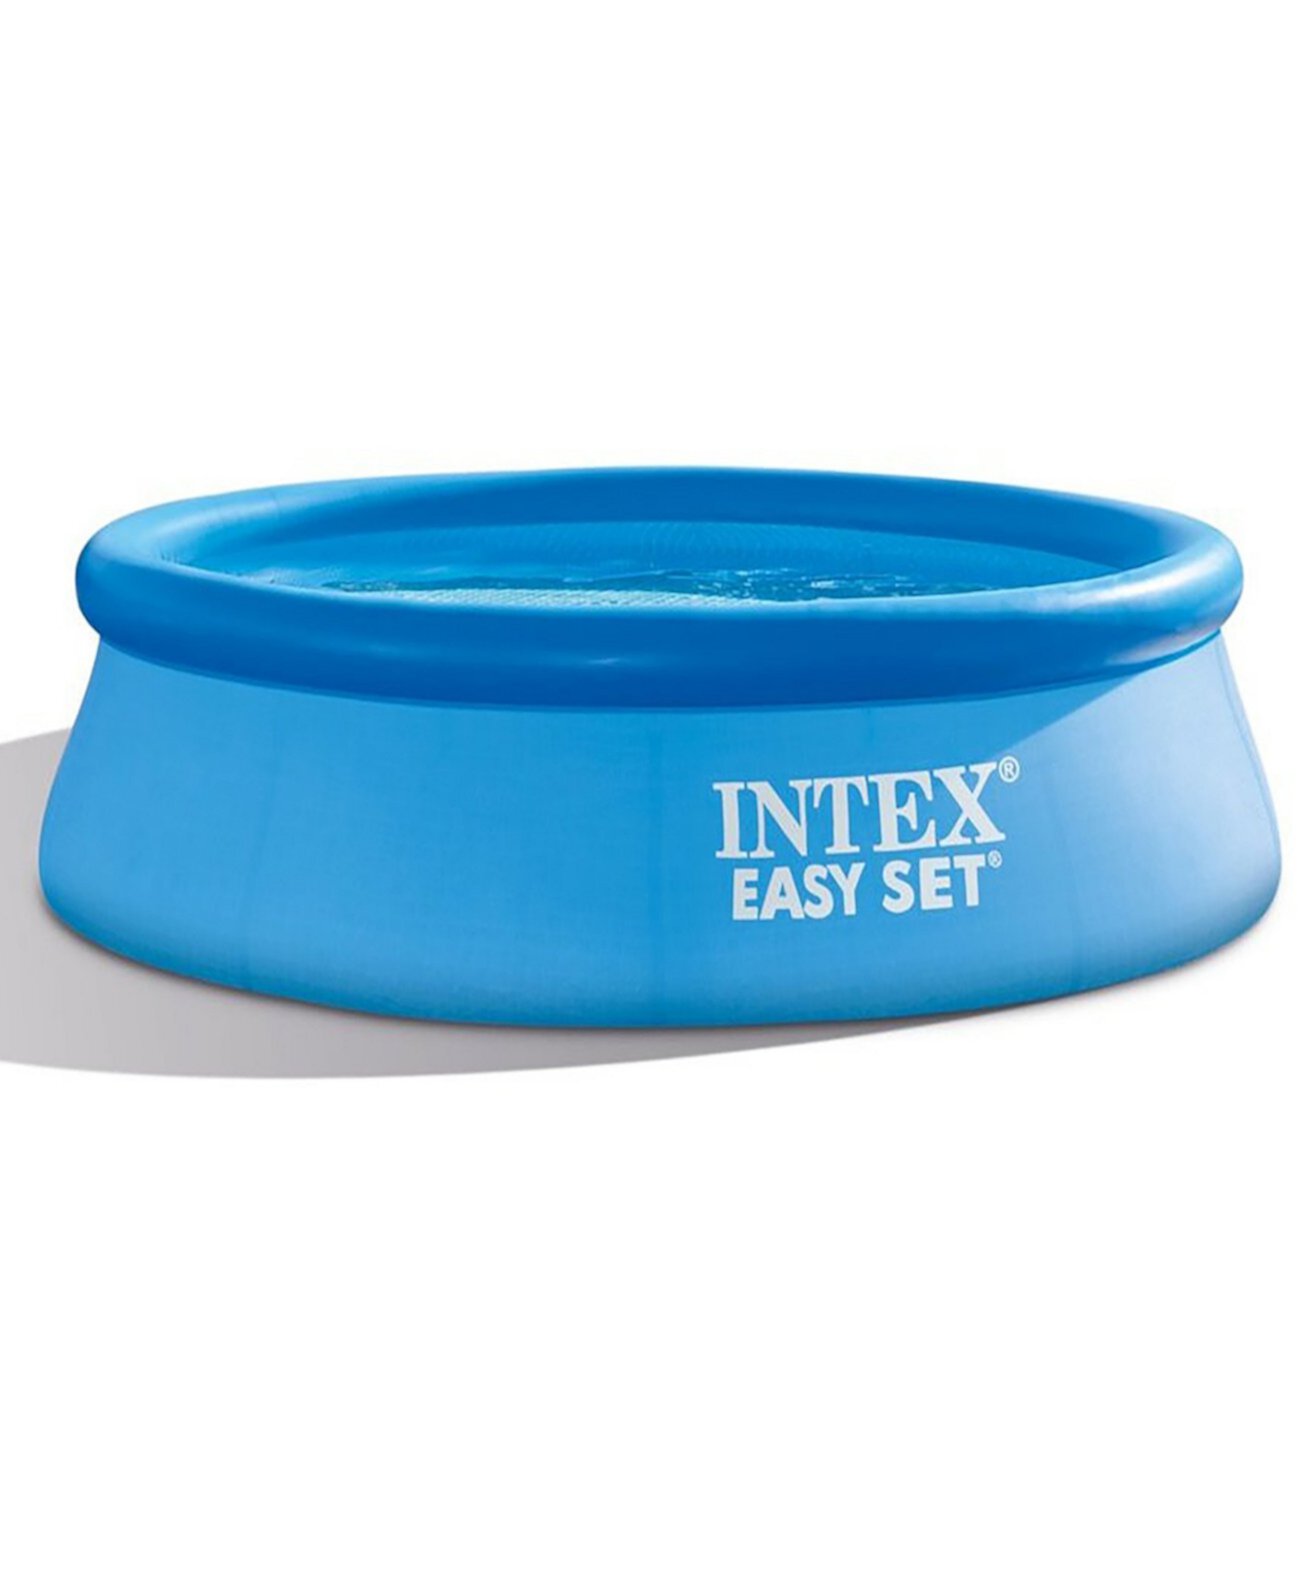 Надувной бассейн Easy Set размером 10 на 30 дюймов Intex